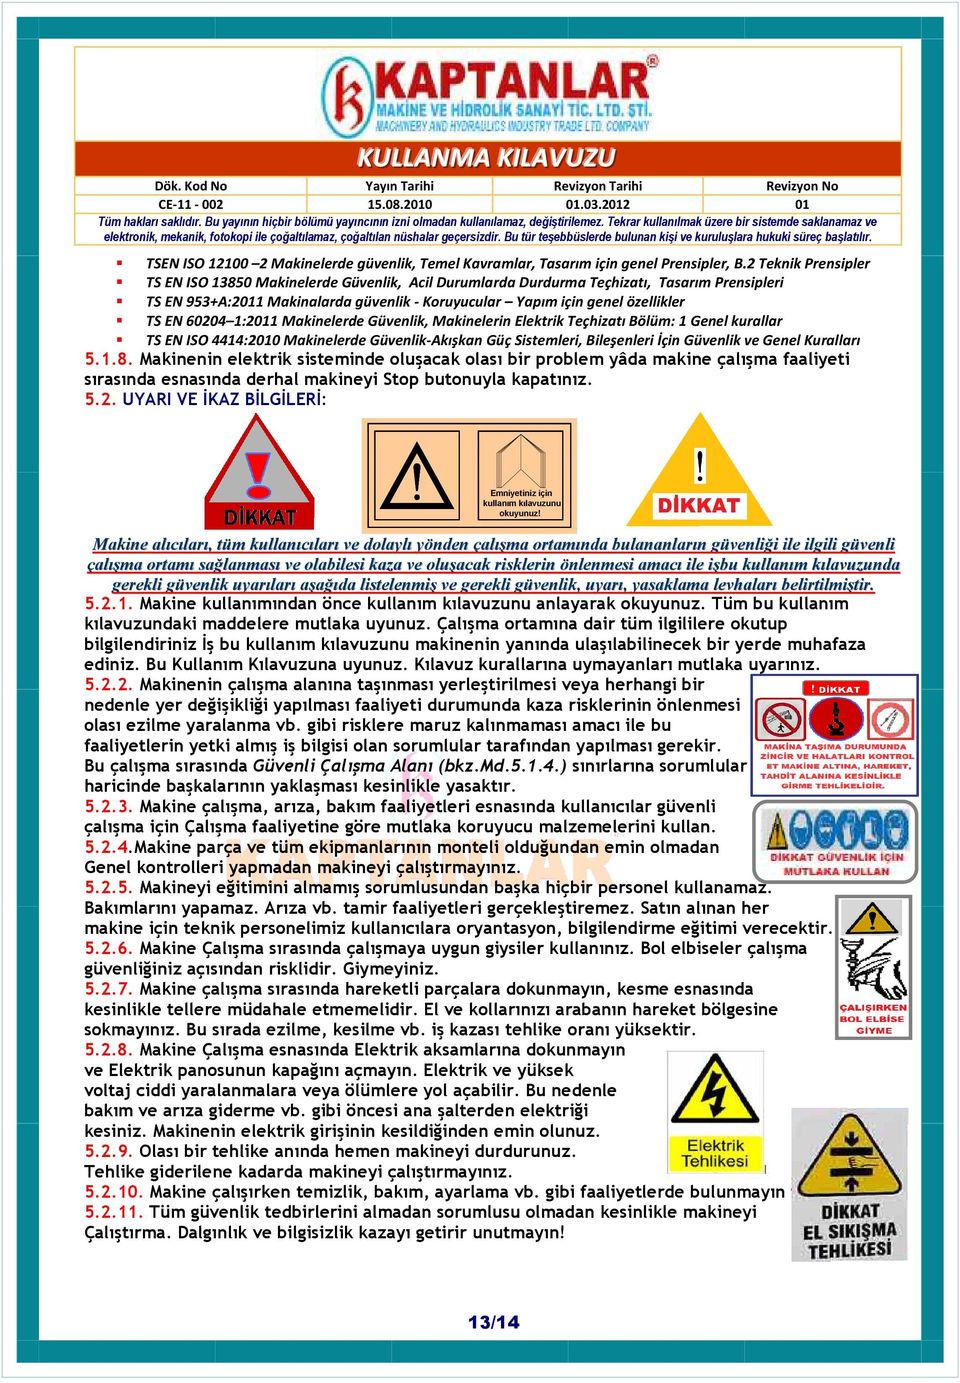 60204 1:2011 Makinelerde Güvenlik, Makinelerin Elektrik Teçhizatı Bölüm: 1 Genel kurallar TS EN ISO 4414:2010 Makinelerde Güvenlik-Akışkan Güç Sistemleri, Bileşenleri İçin Güvenlik ve Genel Kuralları